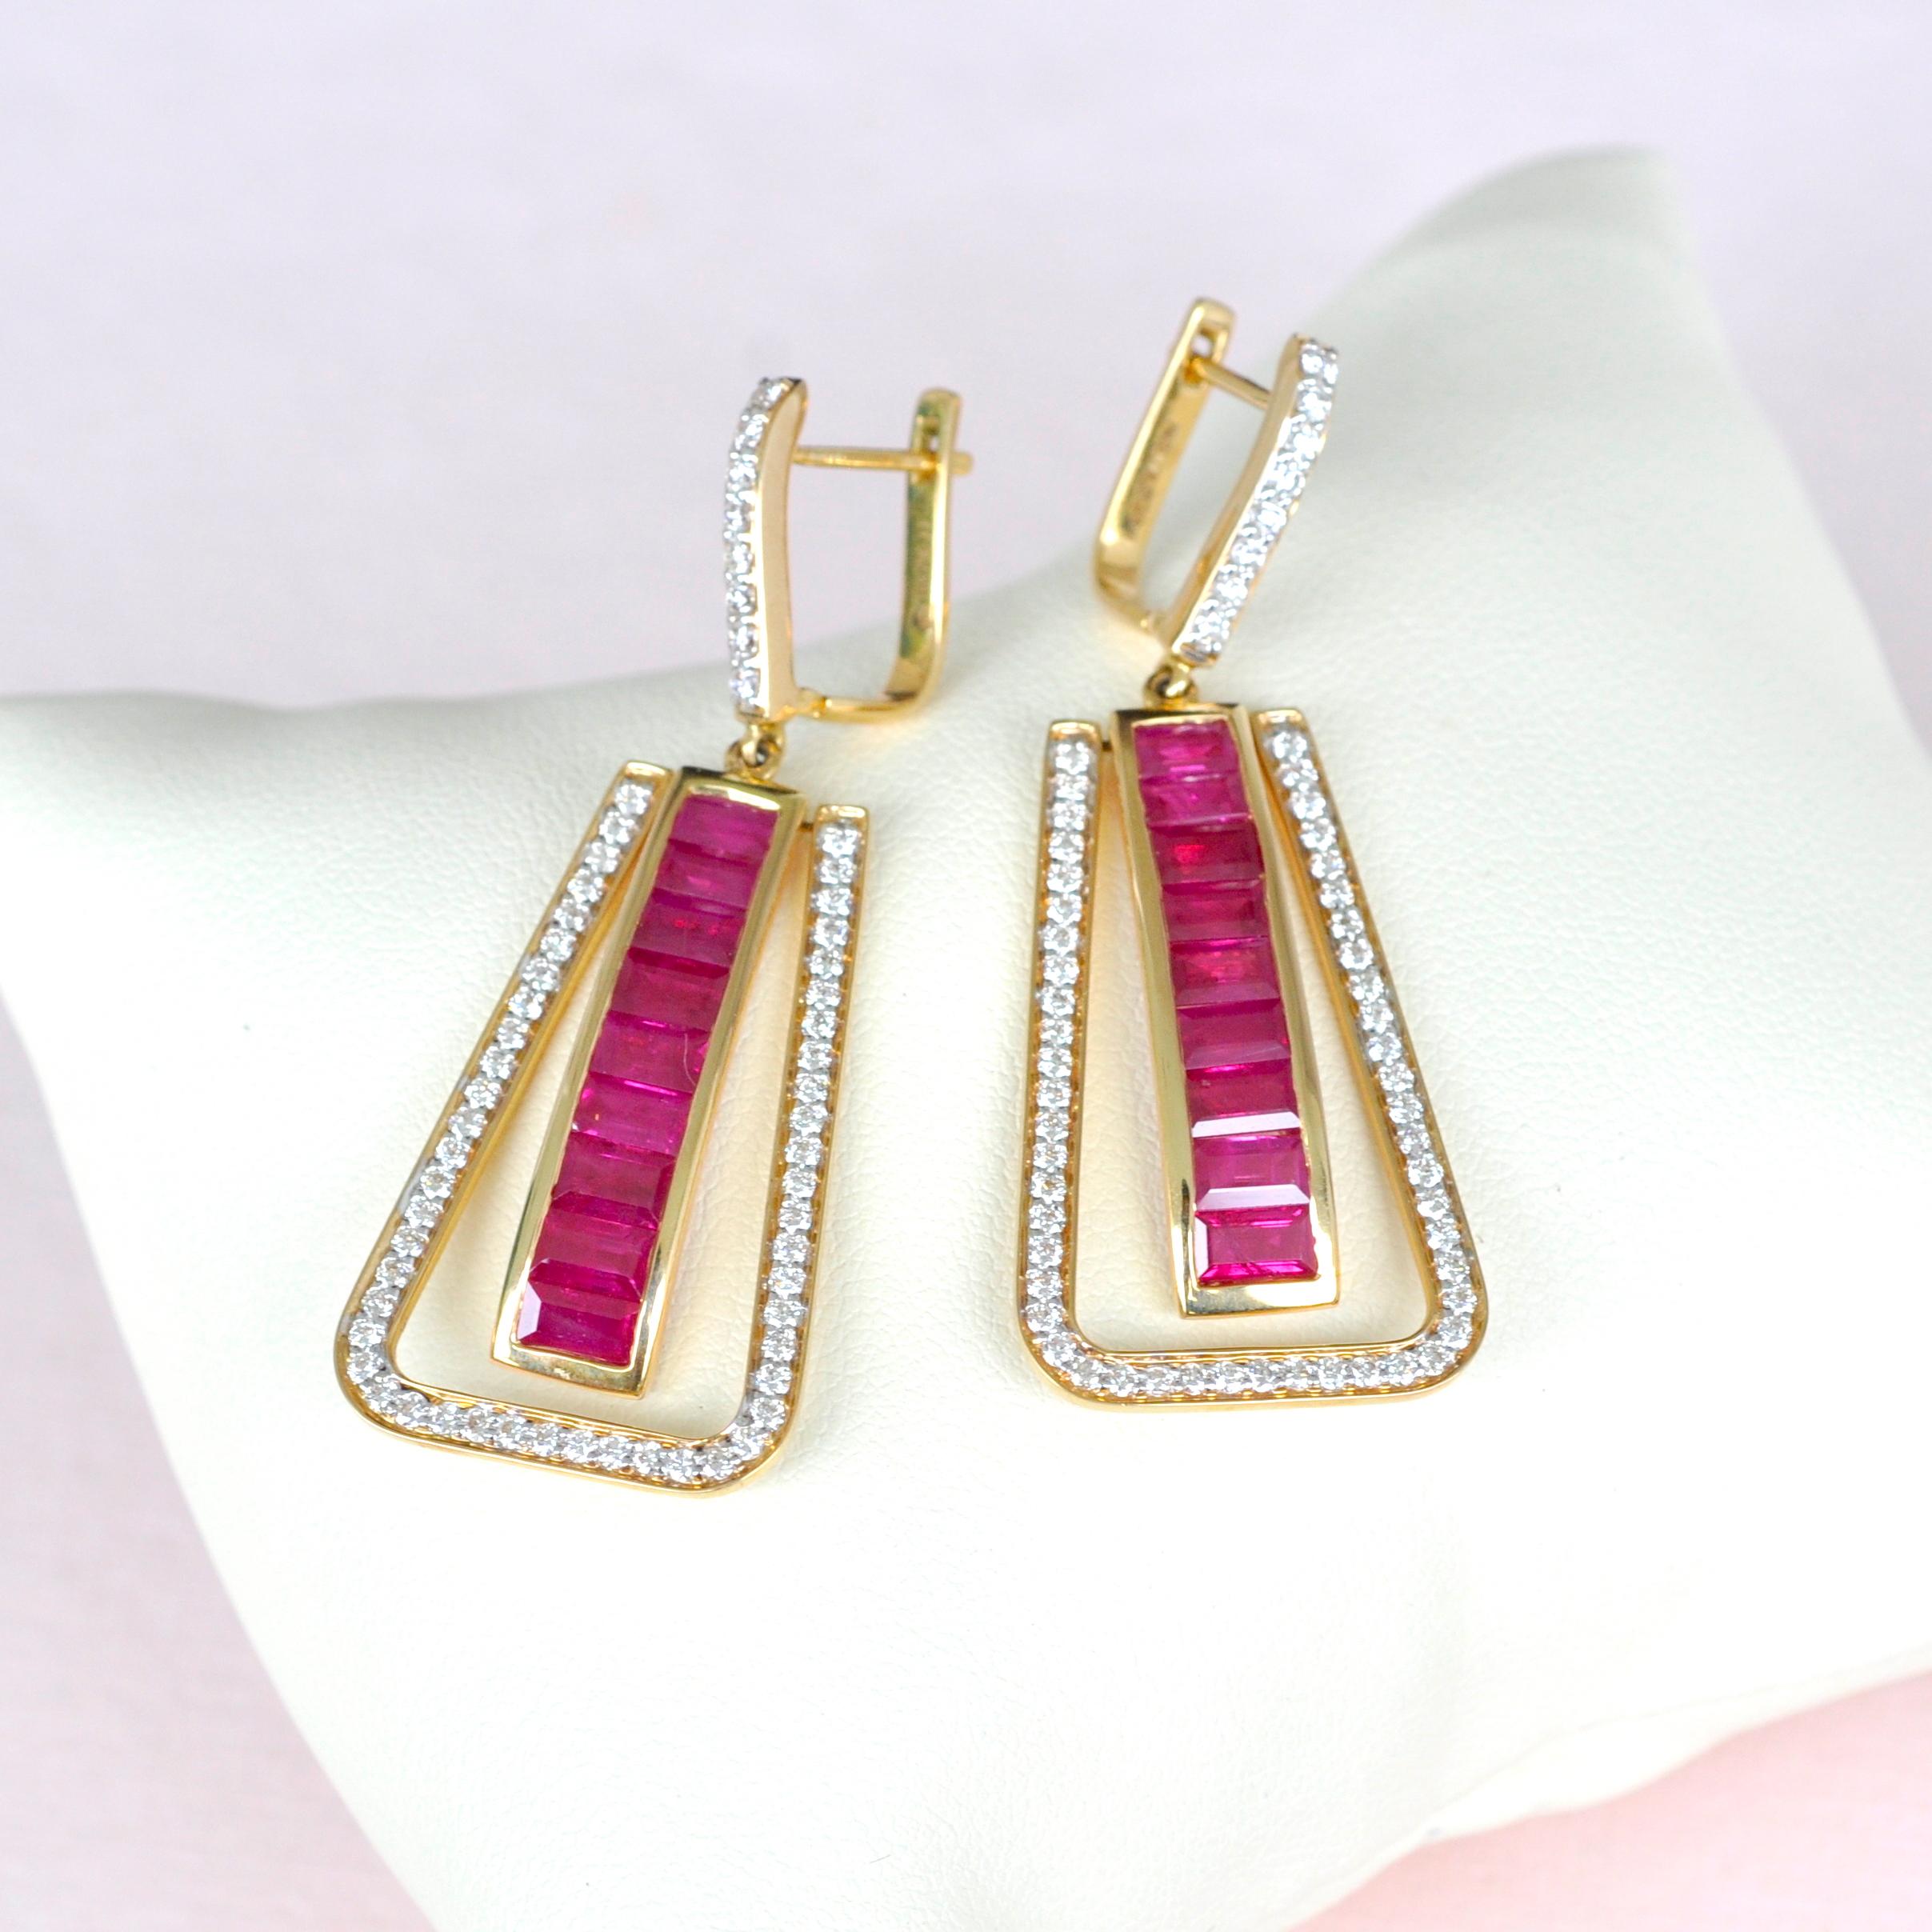 Art Deco Style 18 Karat Gold Channel Set Ruby Baguette Diamond Linear Earrings For Sale 2